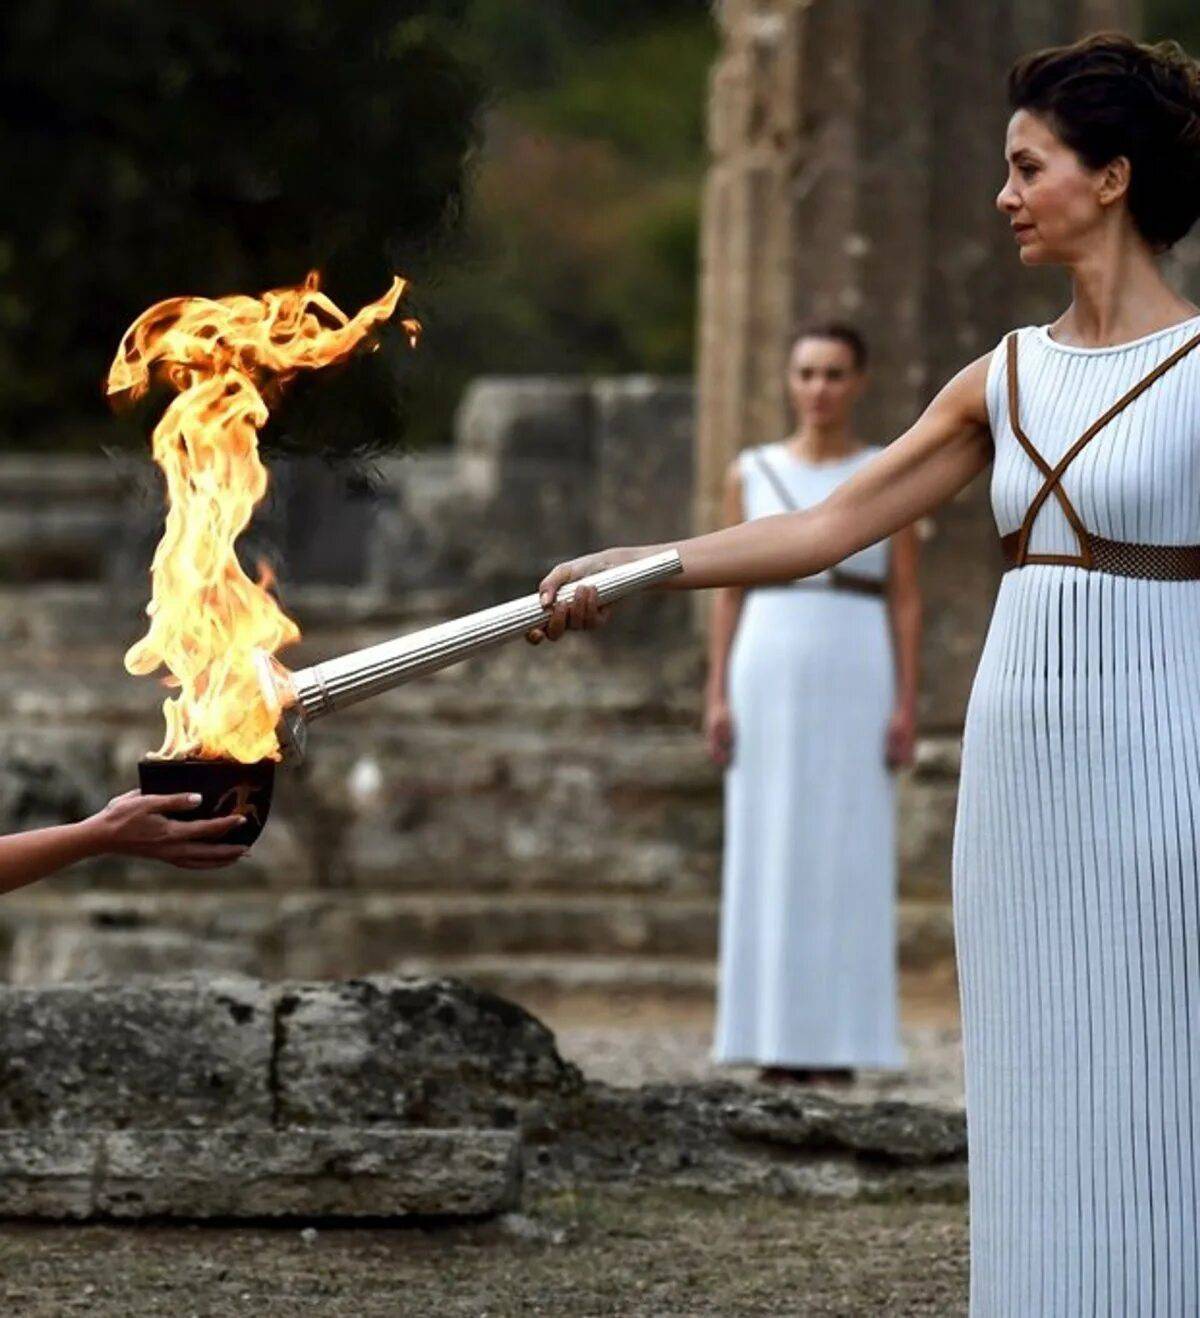 Церемония зажжения олимпийского огня в Олимпии. Олимпийский огонь в Греции. Традиция зажжения олимпийского огня в древней Греции. Олимпийский огонь в древности. Олимпийский огонь современных игр зажигается